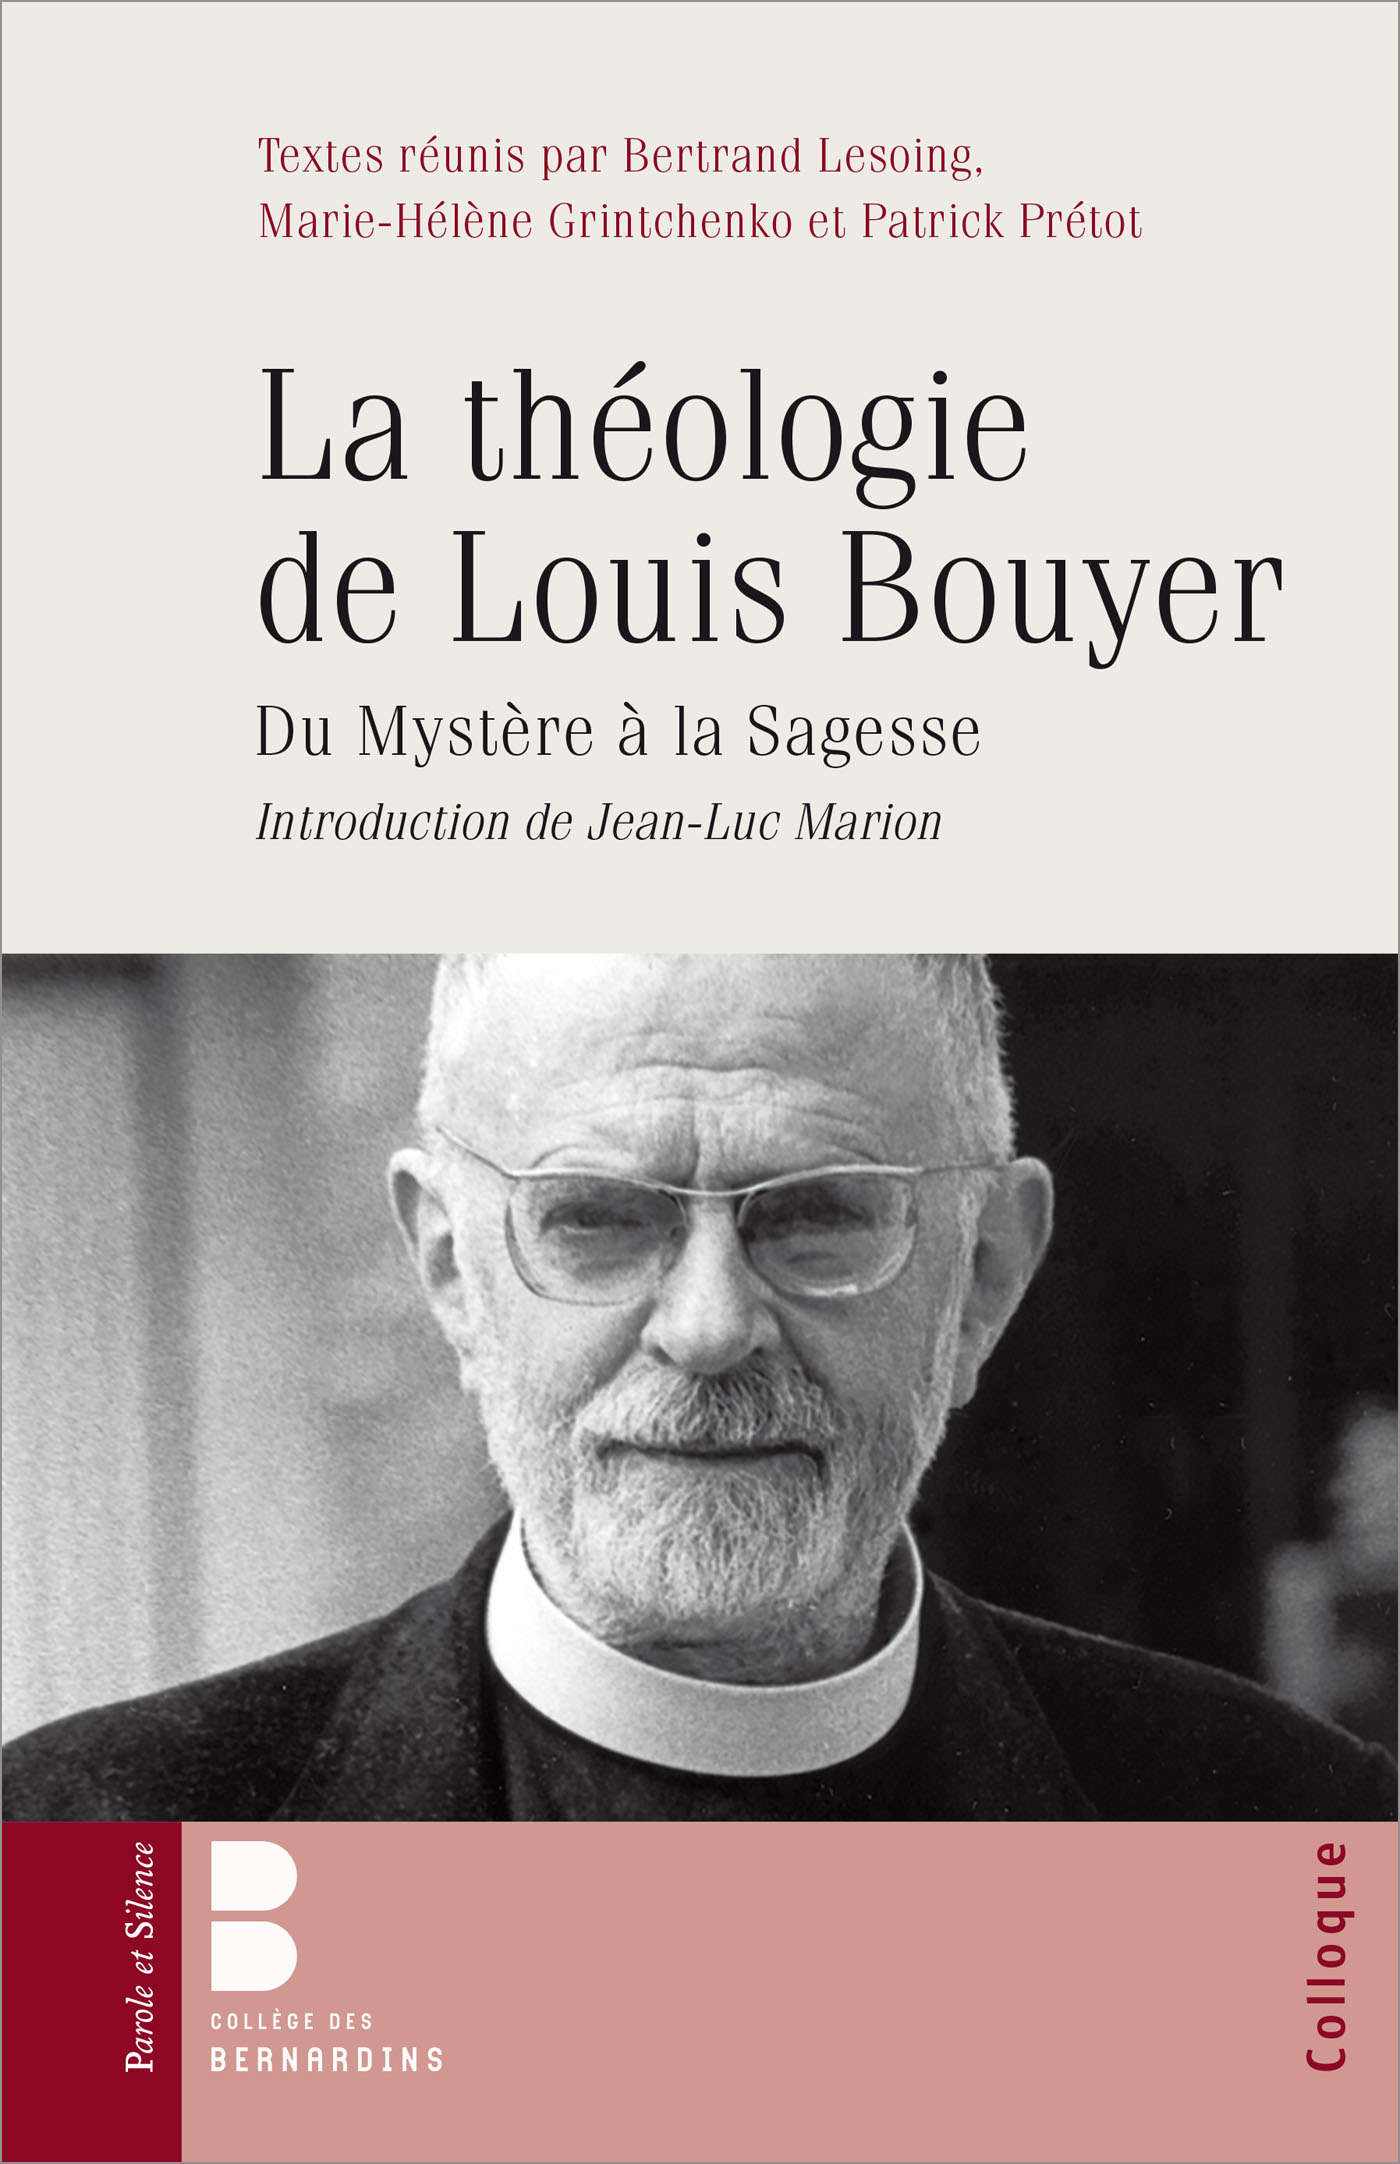 La théologie de Louis Bouyer